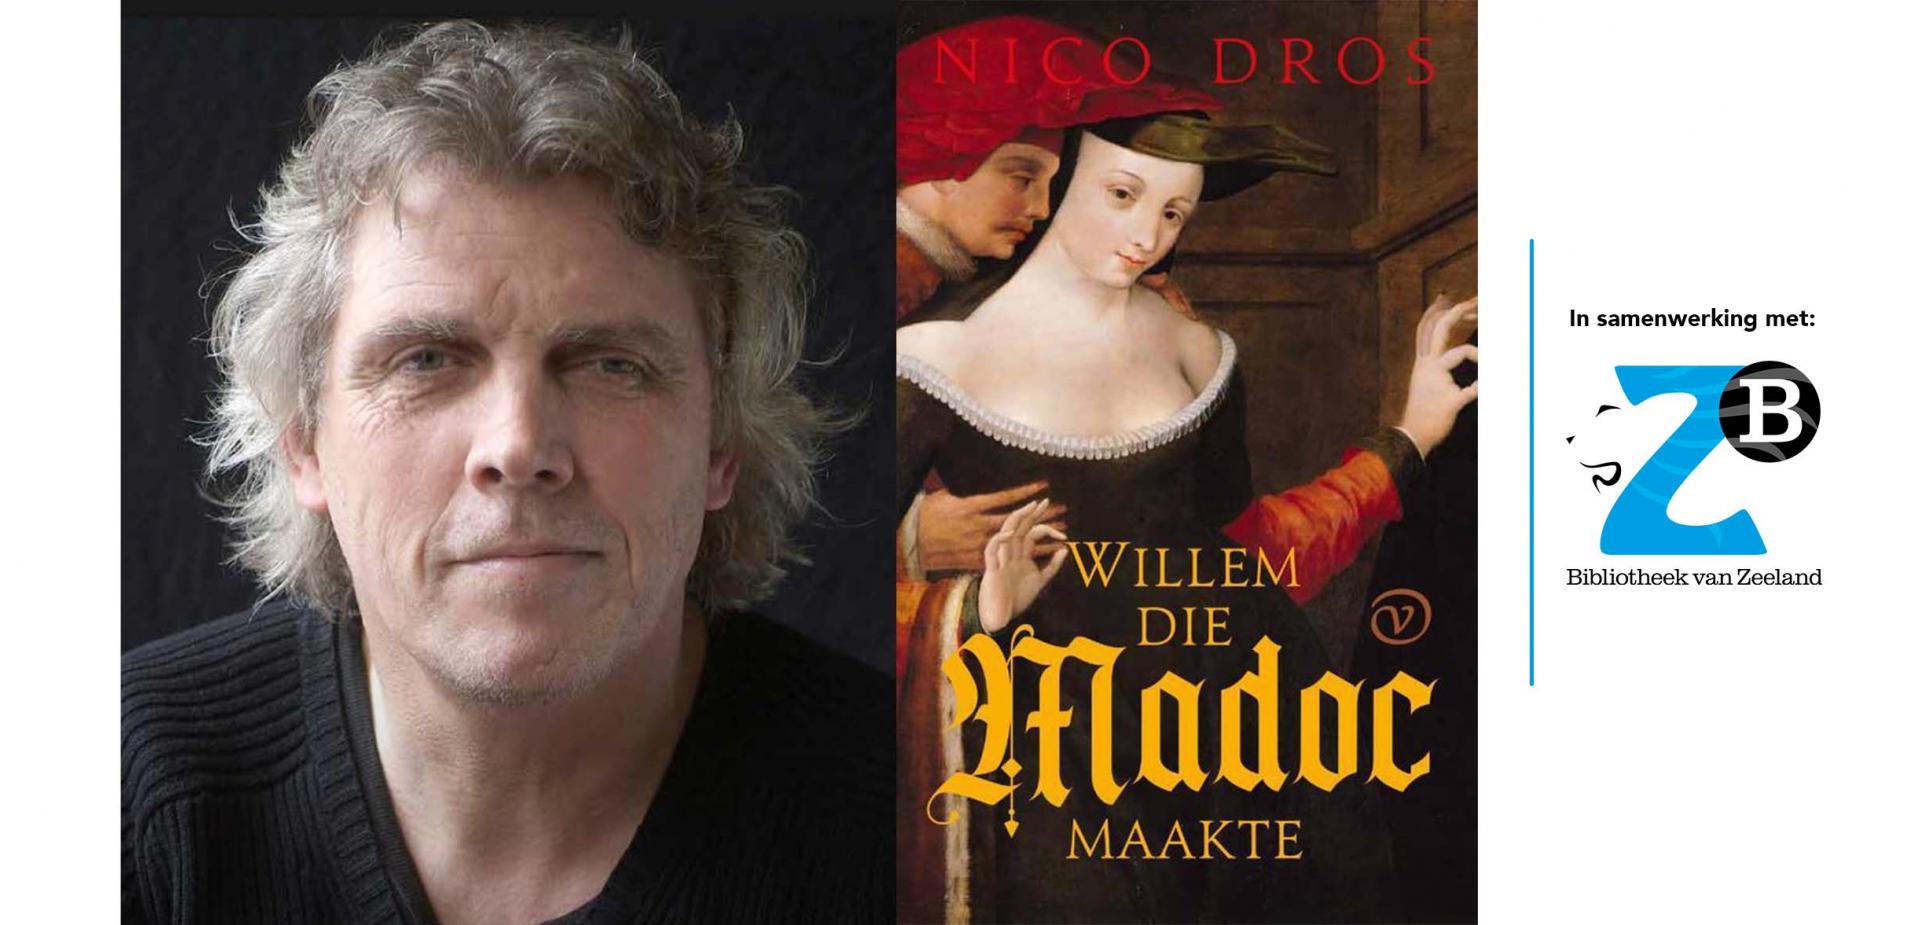 Nico Dros - Willem die Madoc maakte